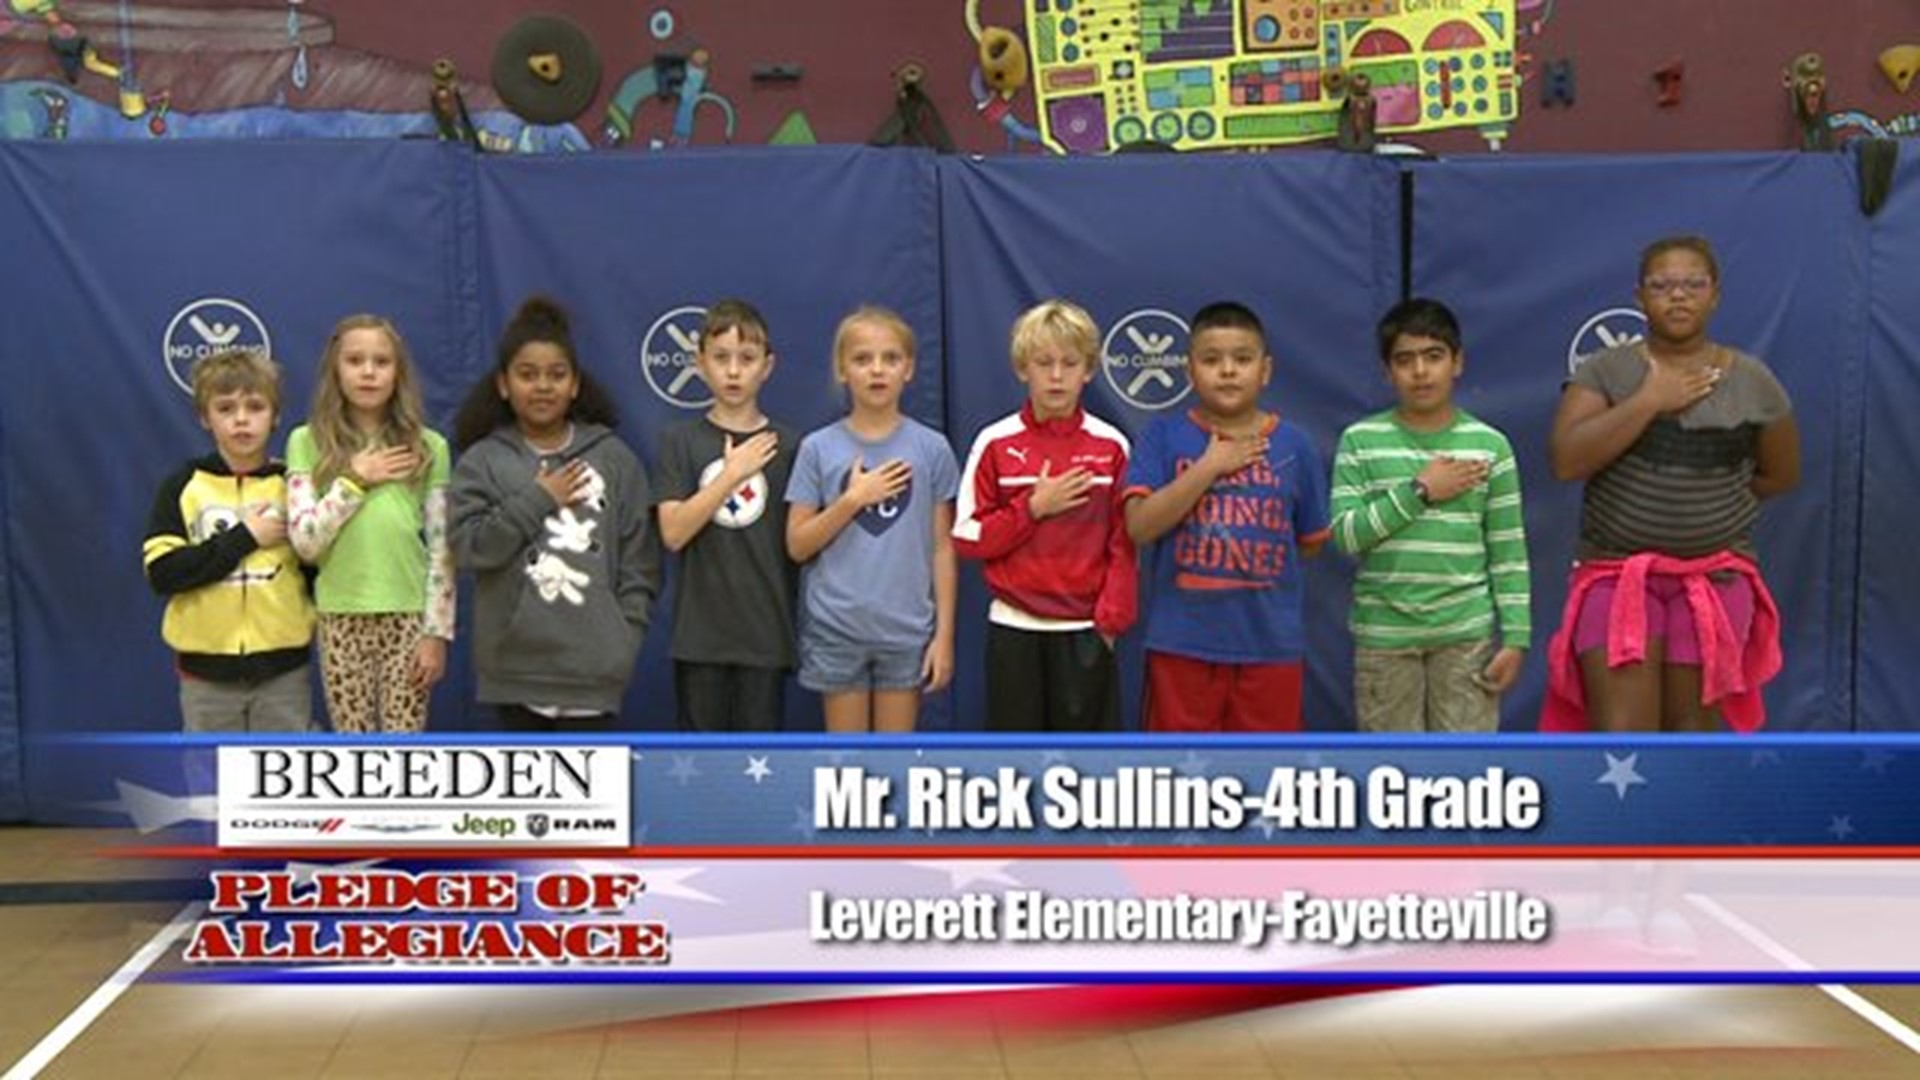 Leverett Elementary, Fayetteville - Mr. Rick Sullins - 4th Grade